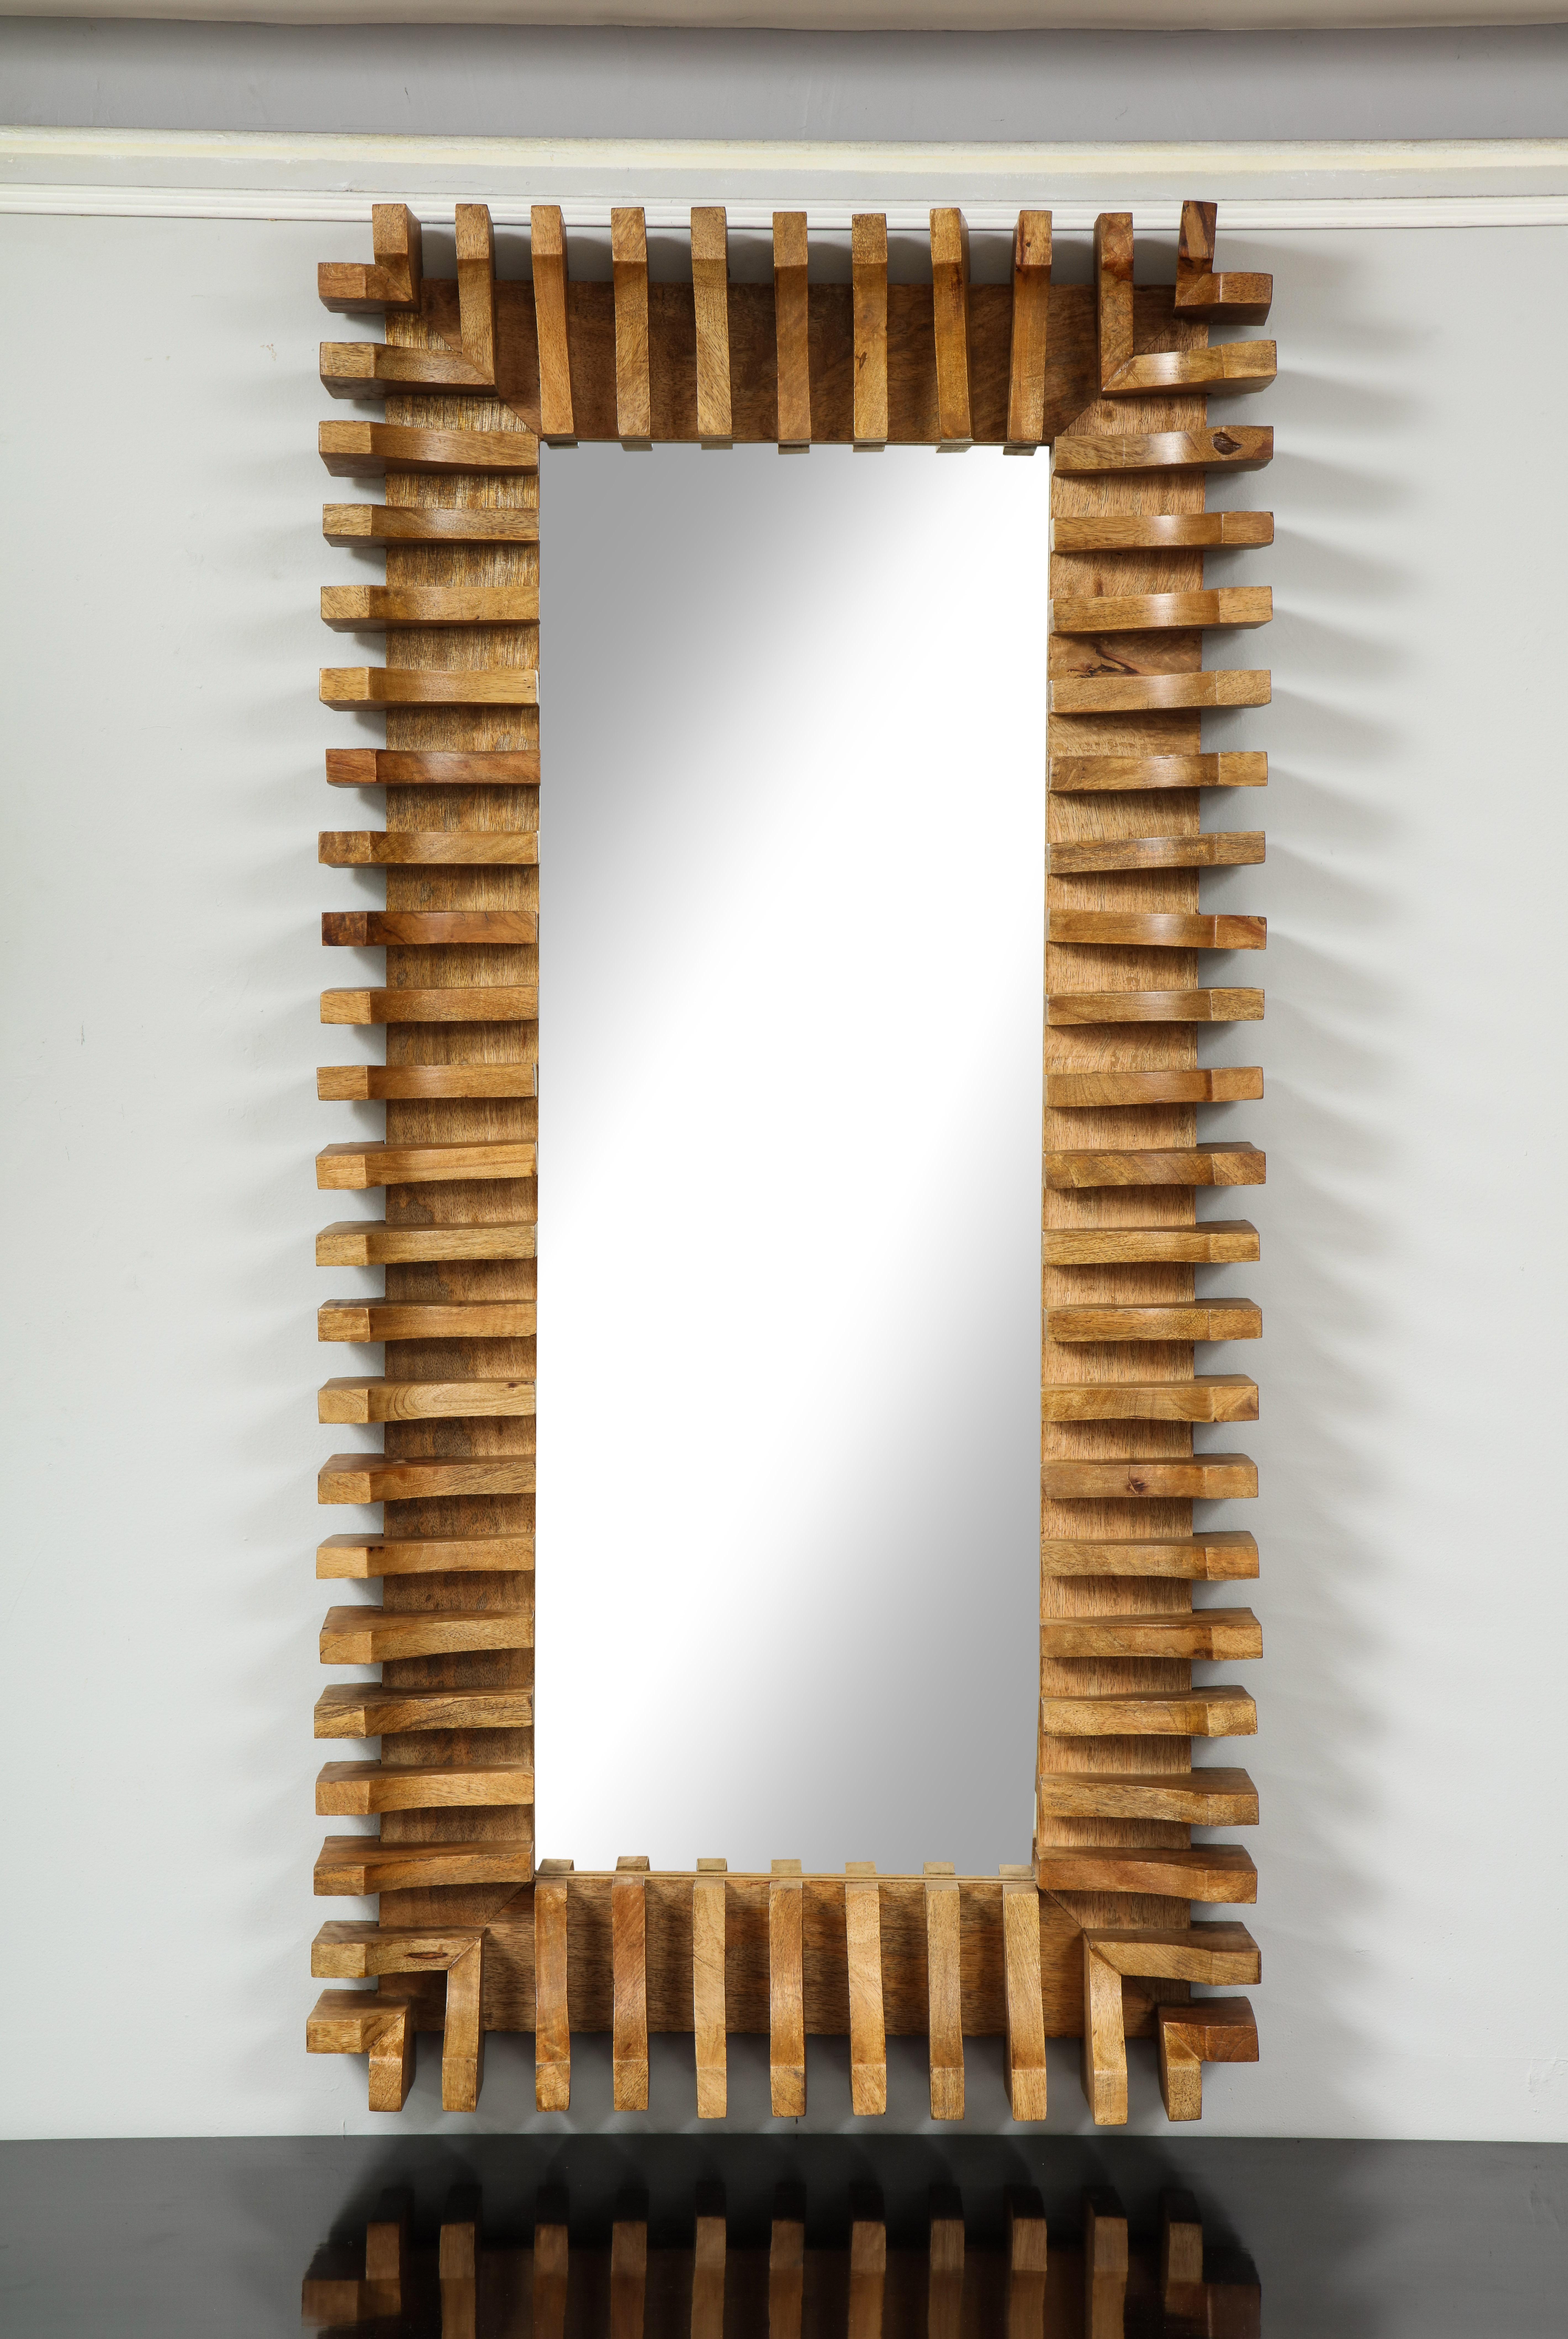 Unusual sculptural mirror.